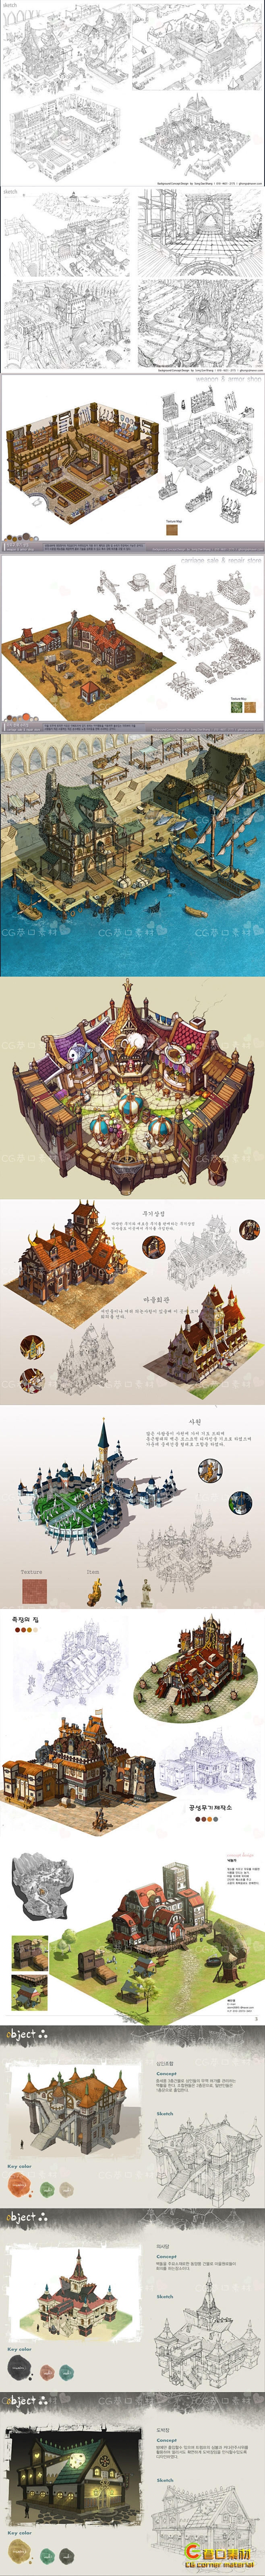 韩国游戏场景原画素材 建筑设计线稿原稿图...